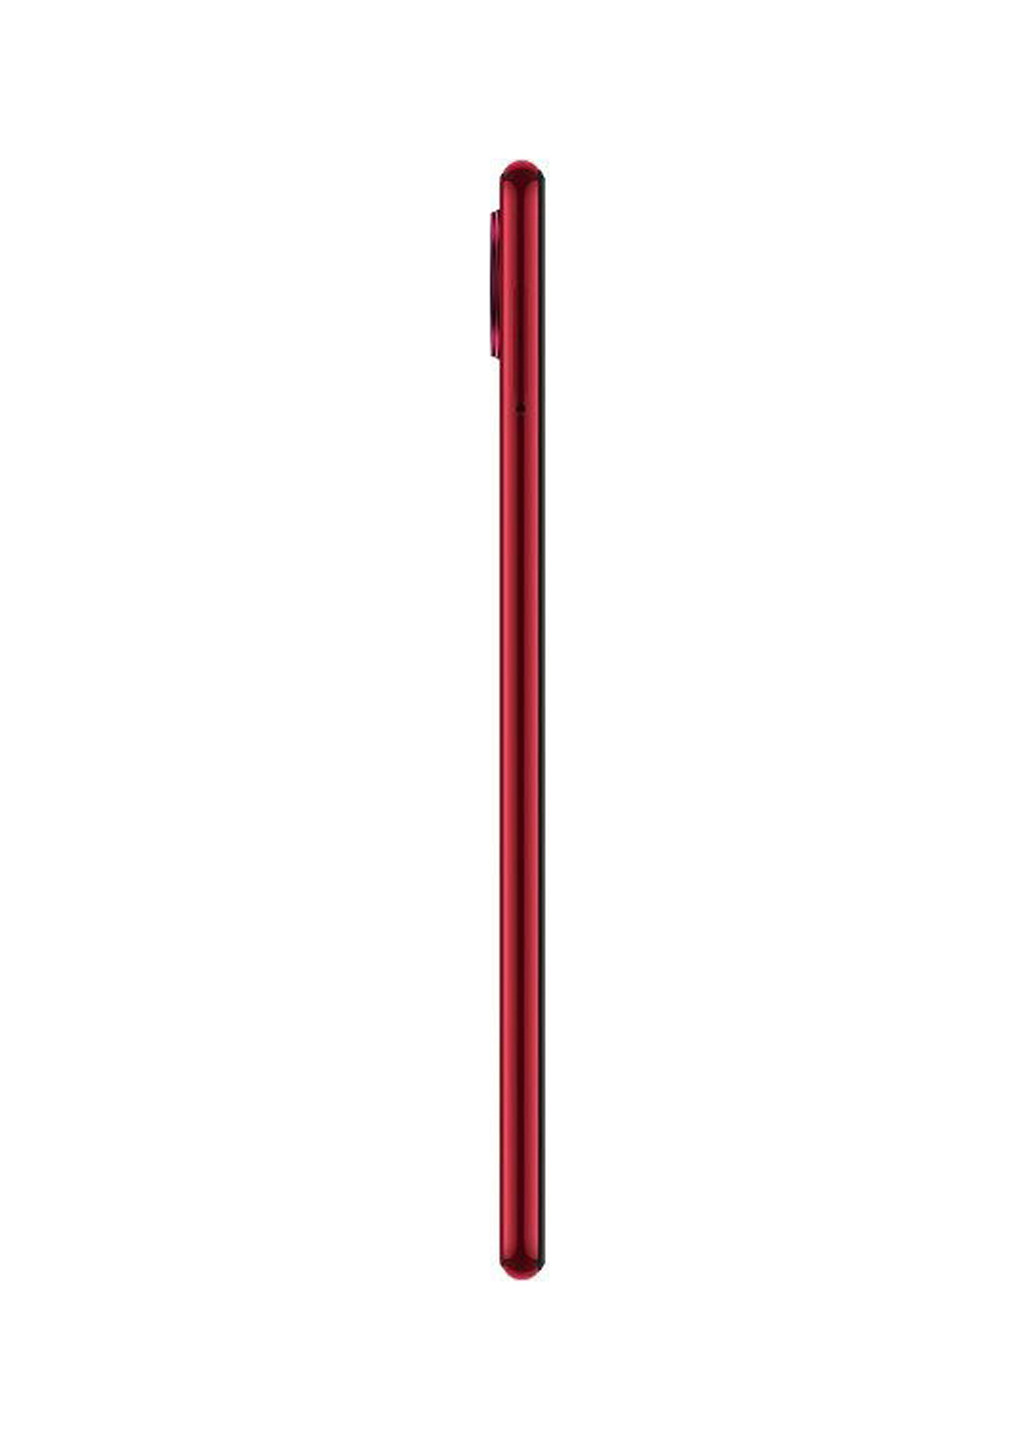 Смартфон Xiaomi redmi note 7 3/32gb nebula red (136614787)